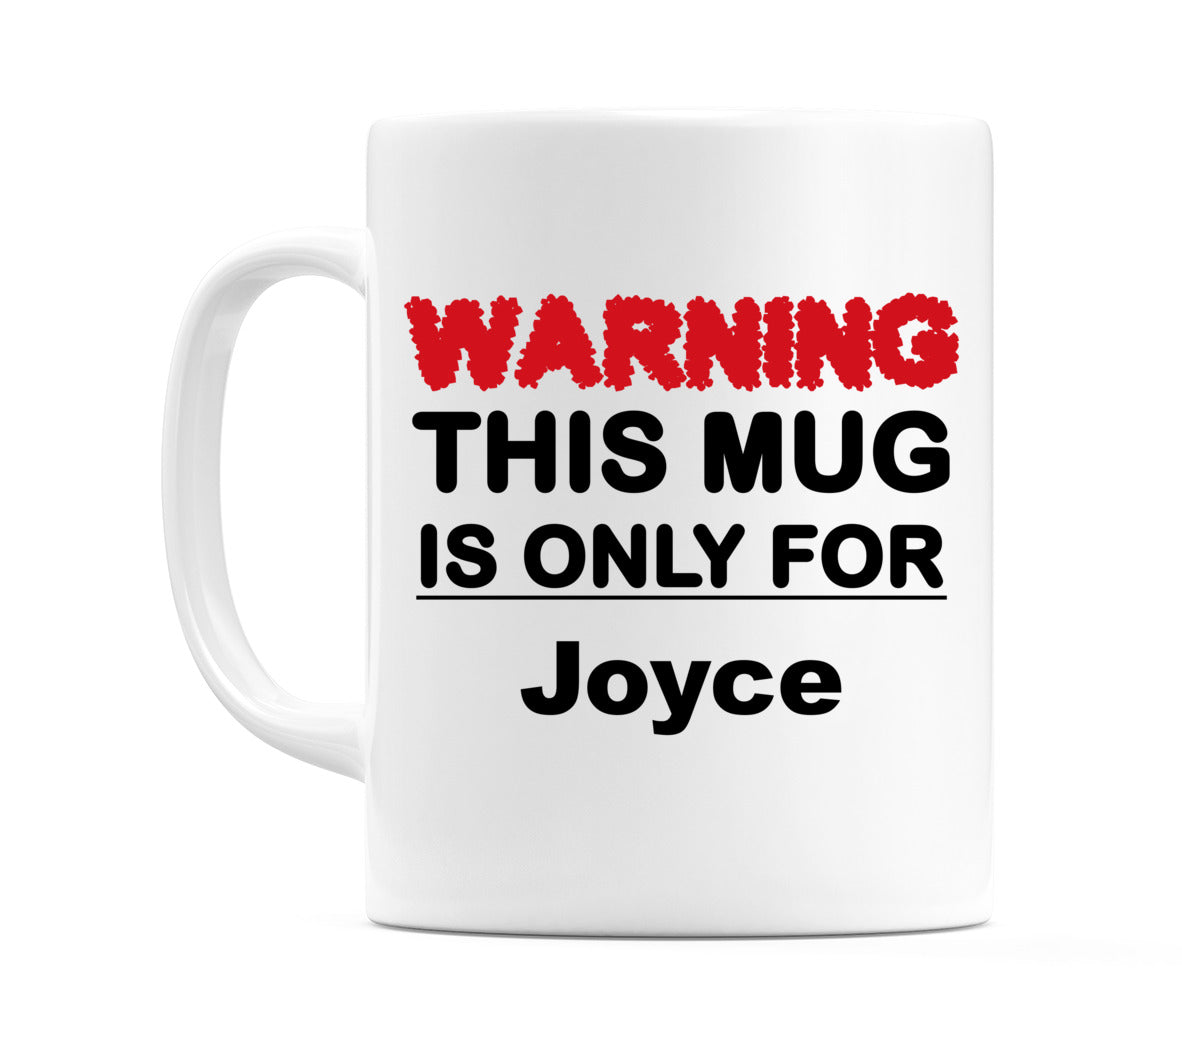 Warning This Mug is ONLY for Joyce Mug